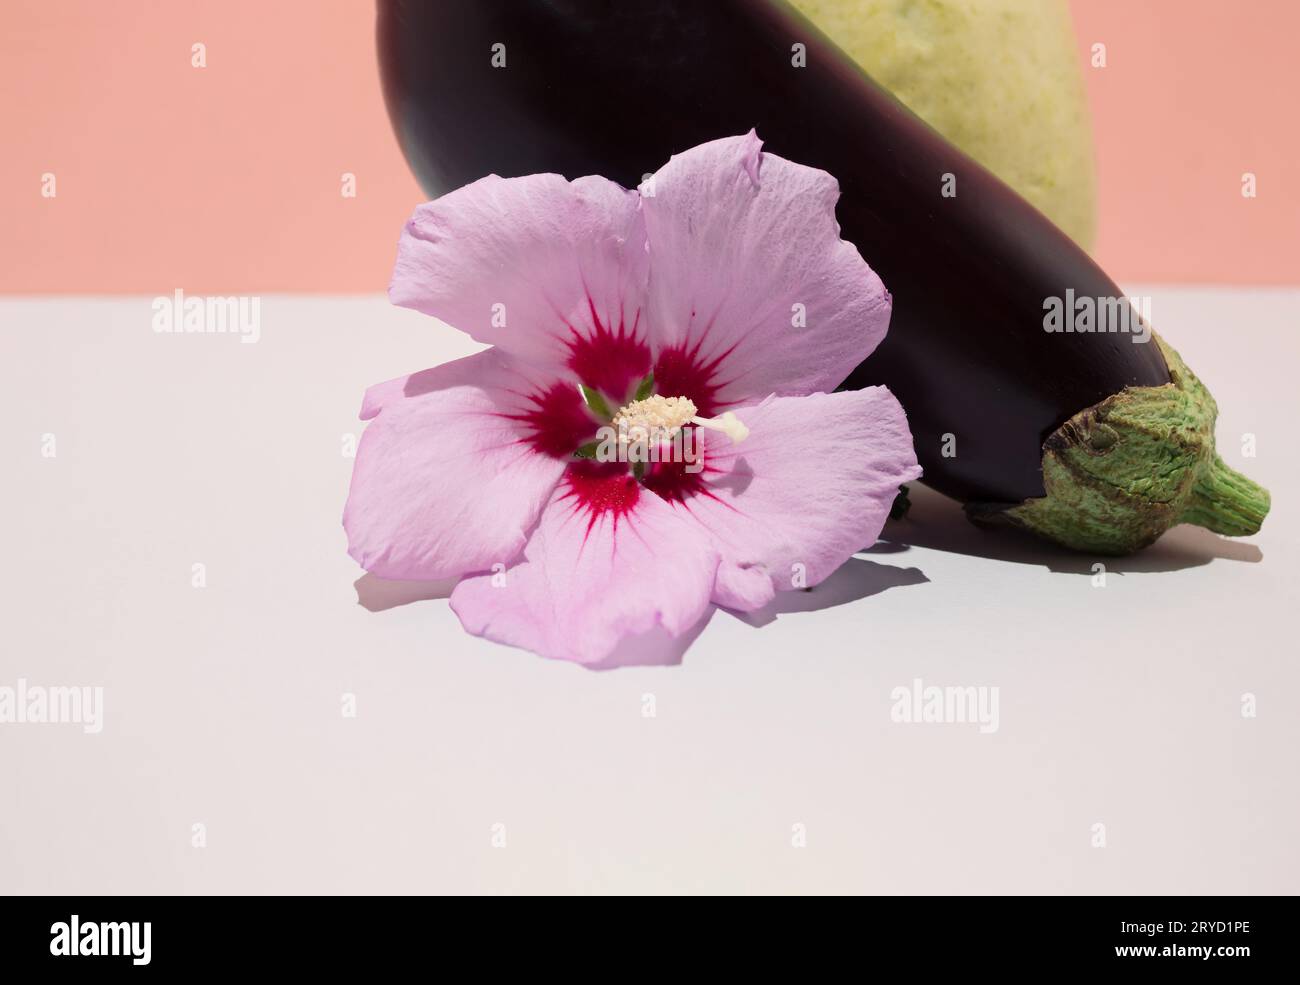 Natura morta con melanzane, zucchine e fiori. Concetto vegetale creativo Foto Stock